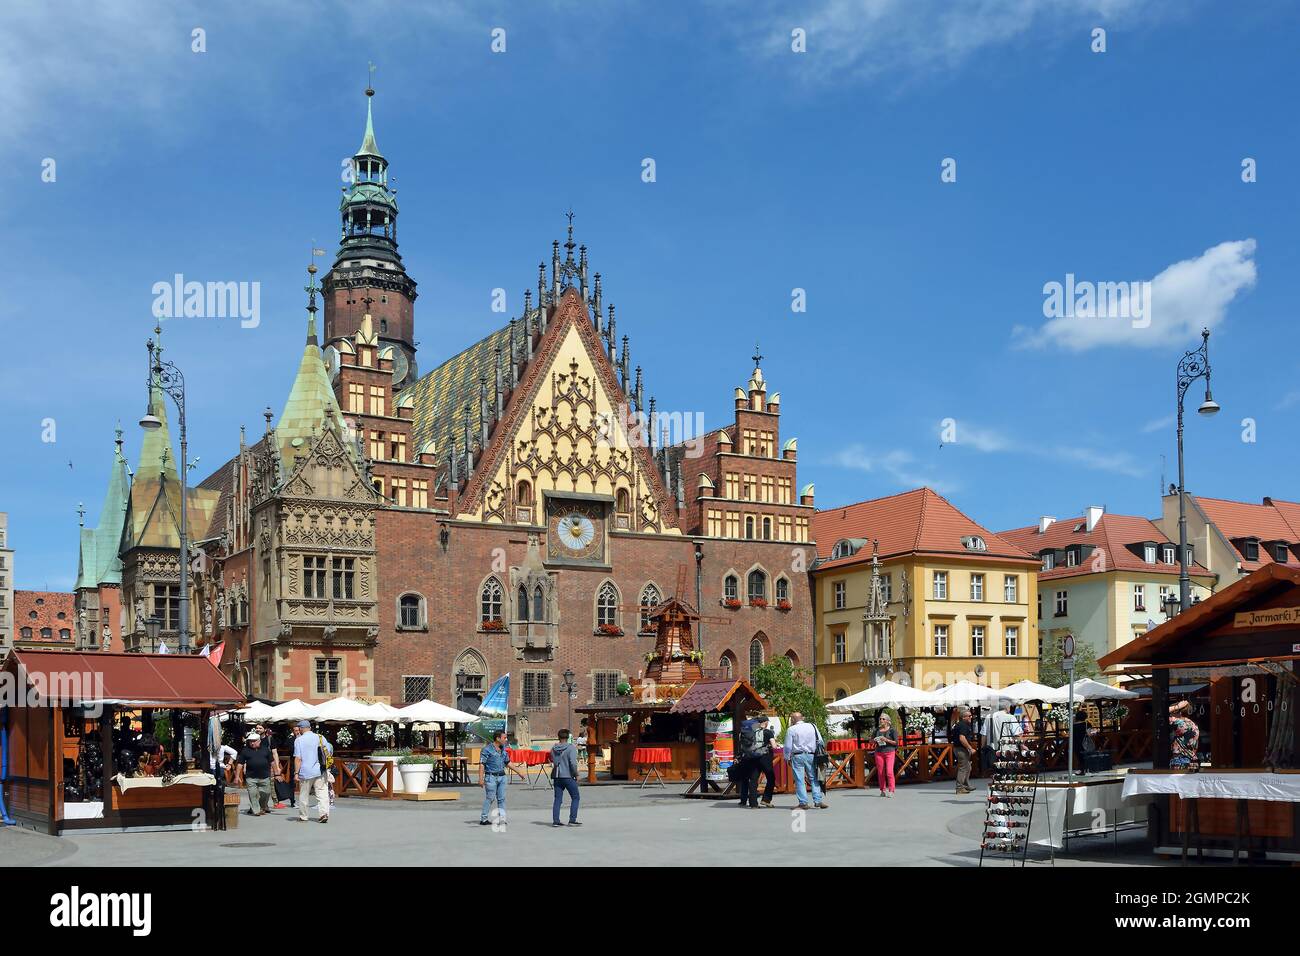 Breslau, Niederschlesien, Polen - 16. Juni 2016: Menschen aus dem Alten Rathaus auf dem Marktplatz in der Altstadt von Breslau - Polen. Stockfoto